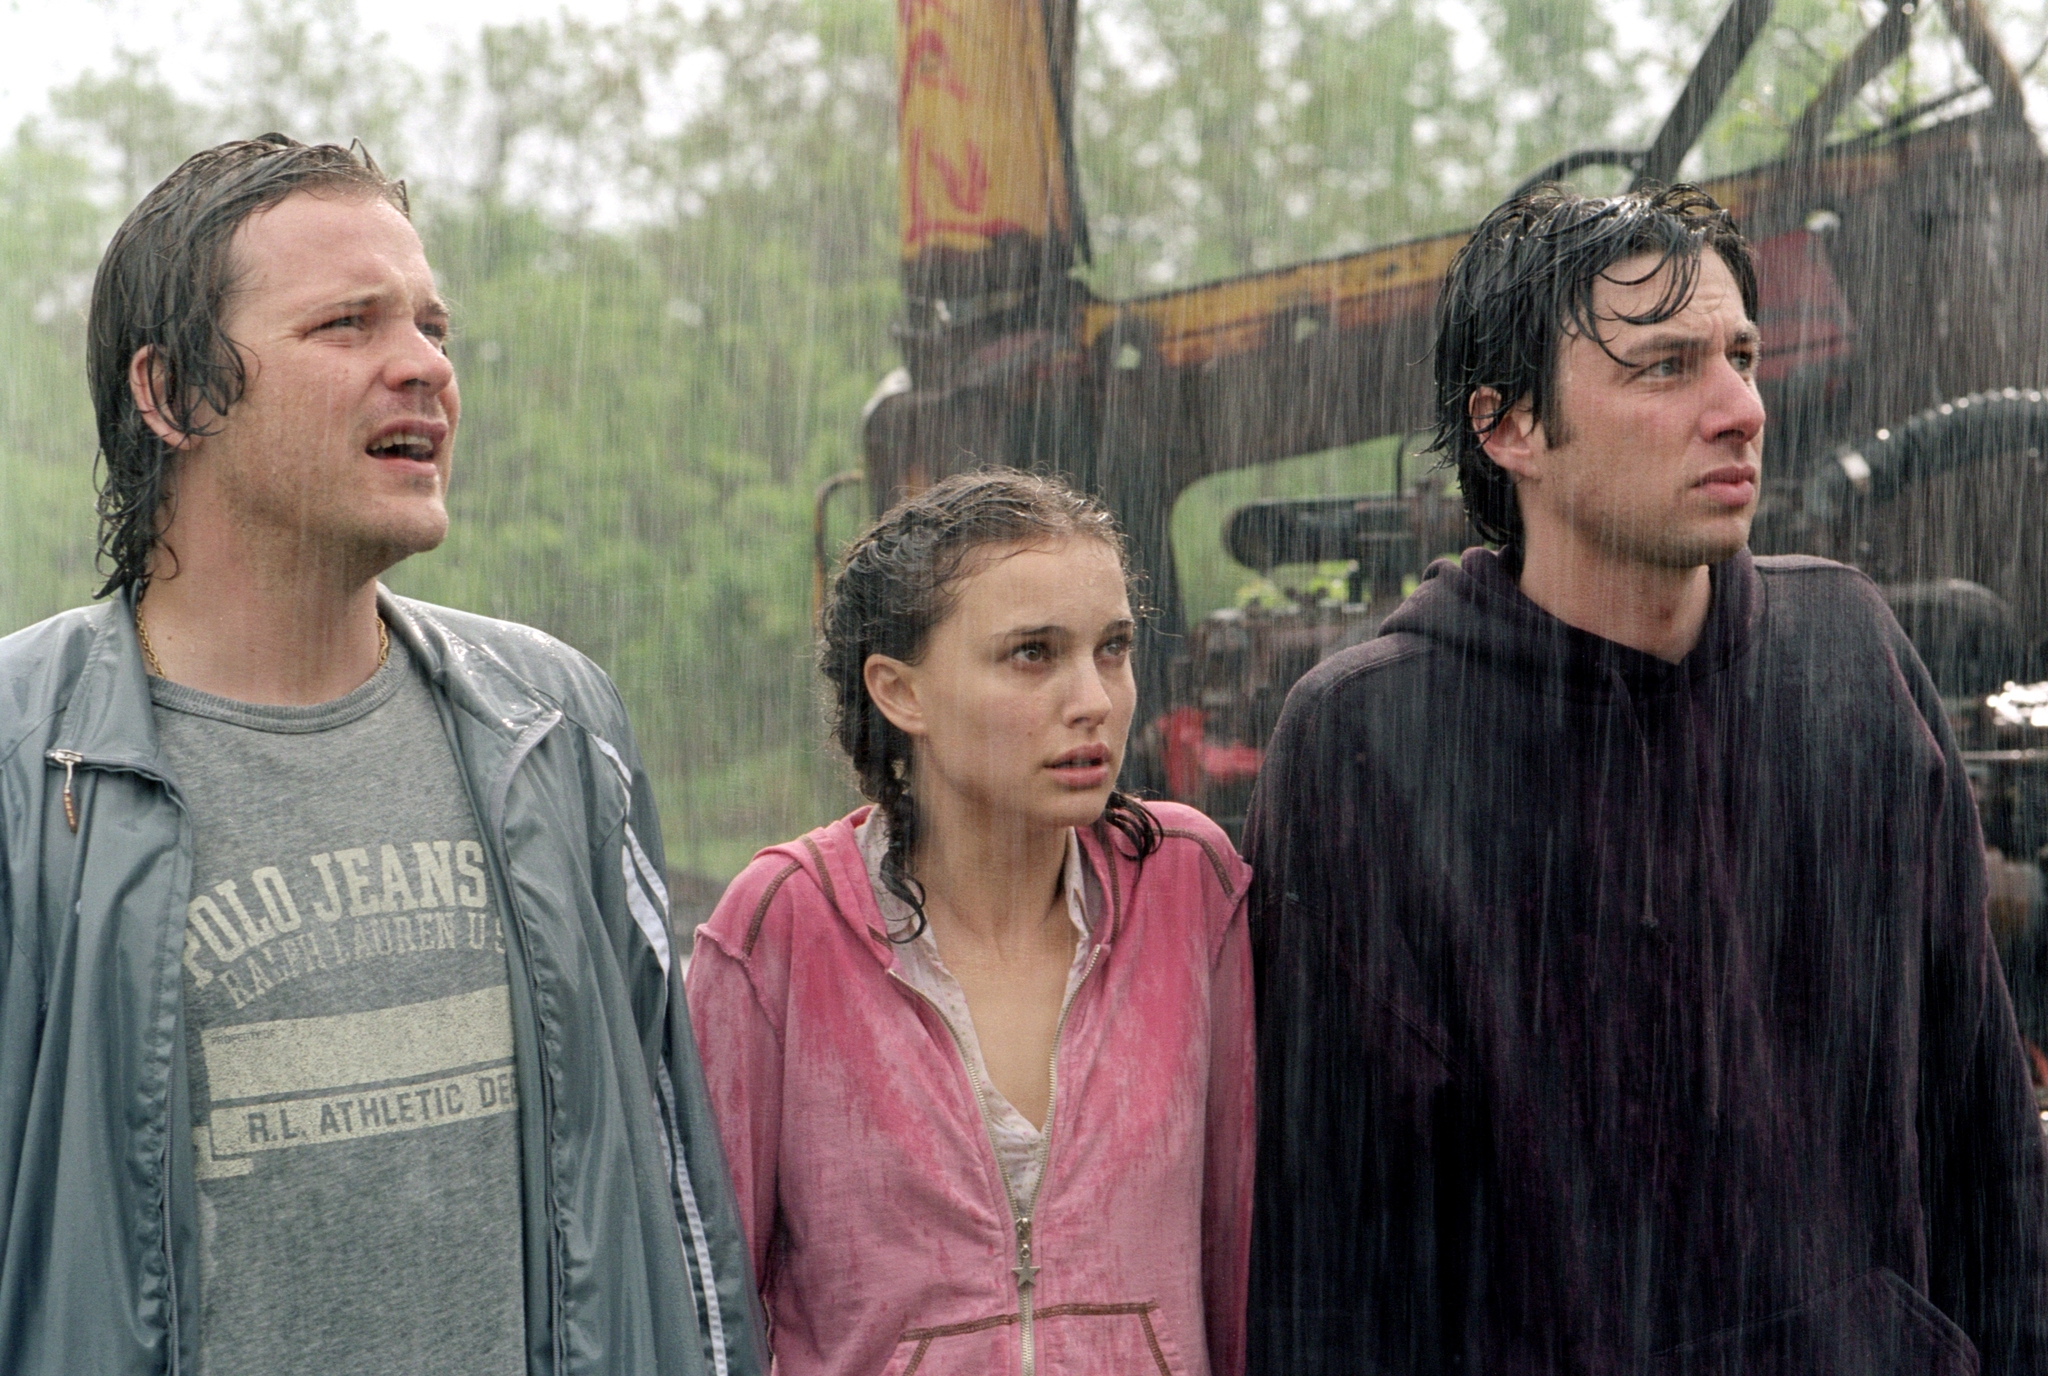 Still of Natalie Portman, Zach Braff and Peter Sarsgaard in Garden State (2004)